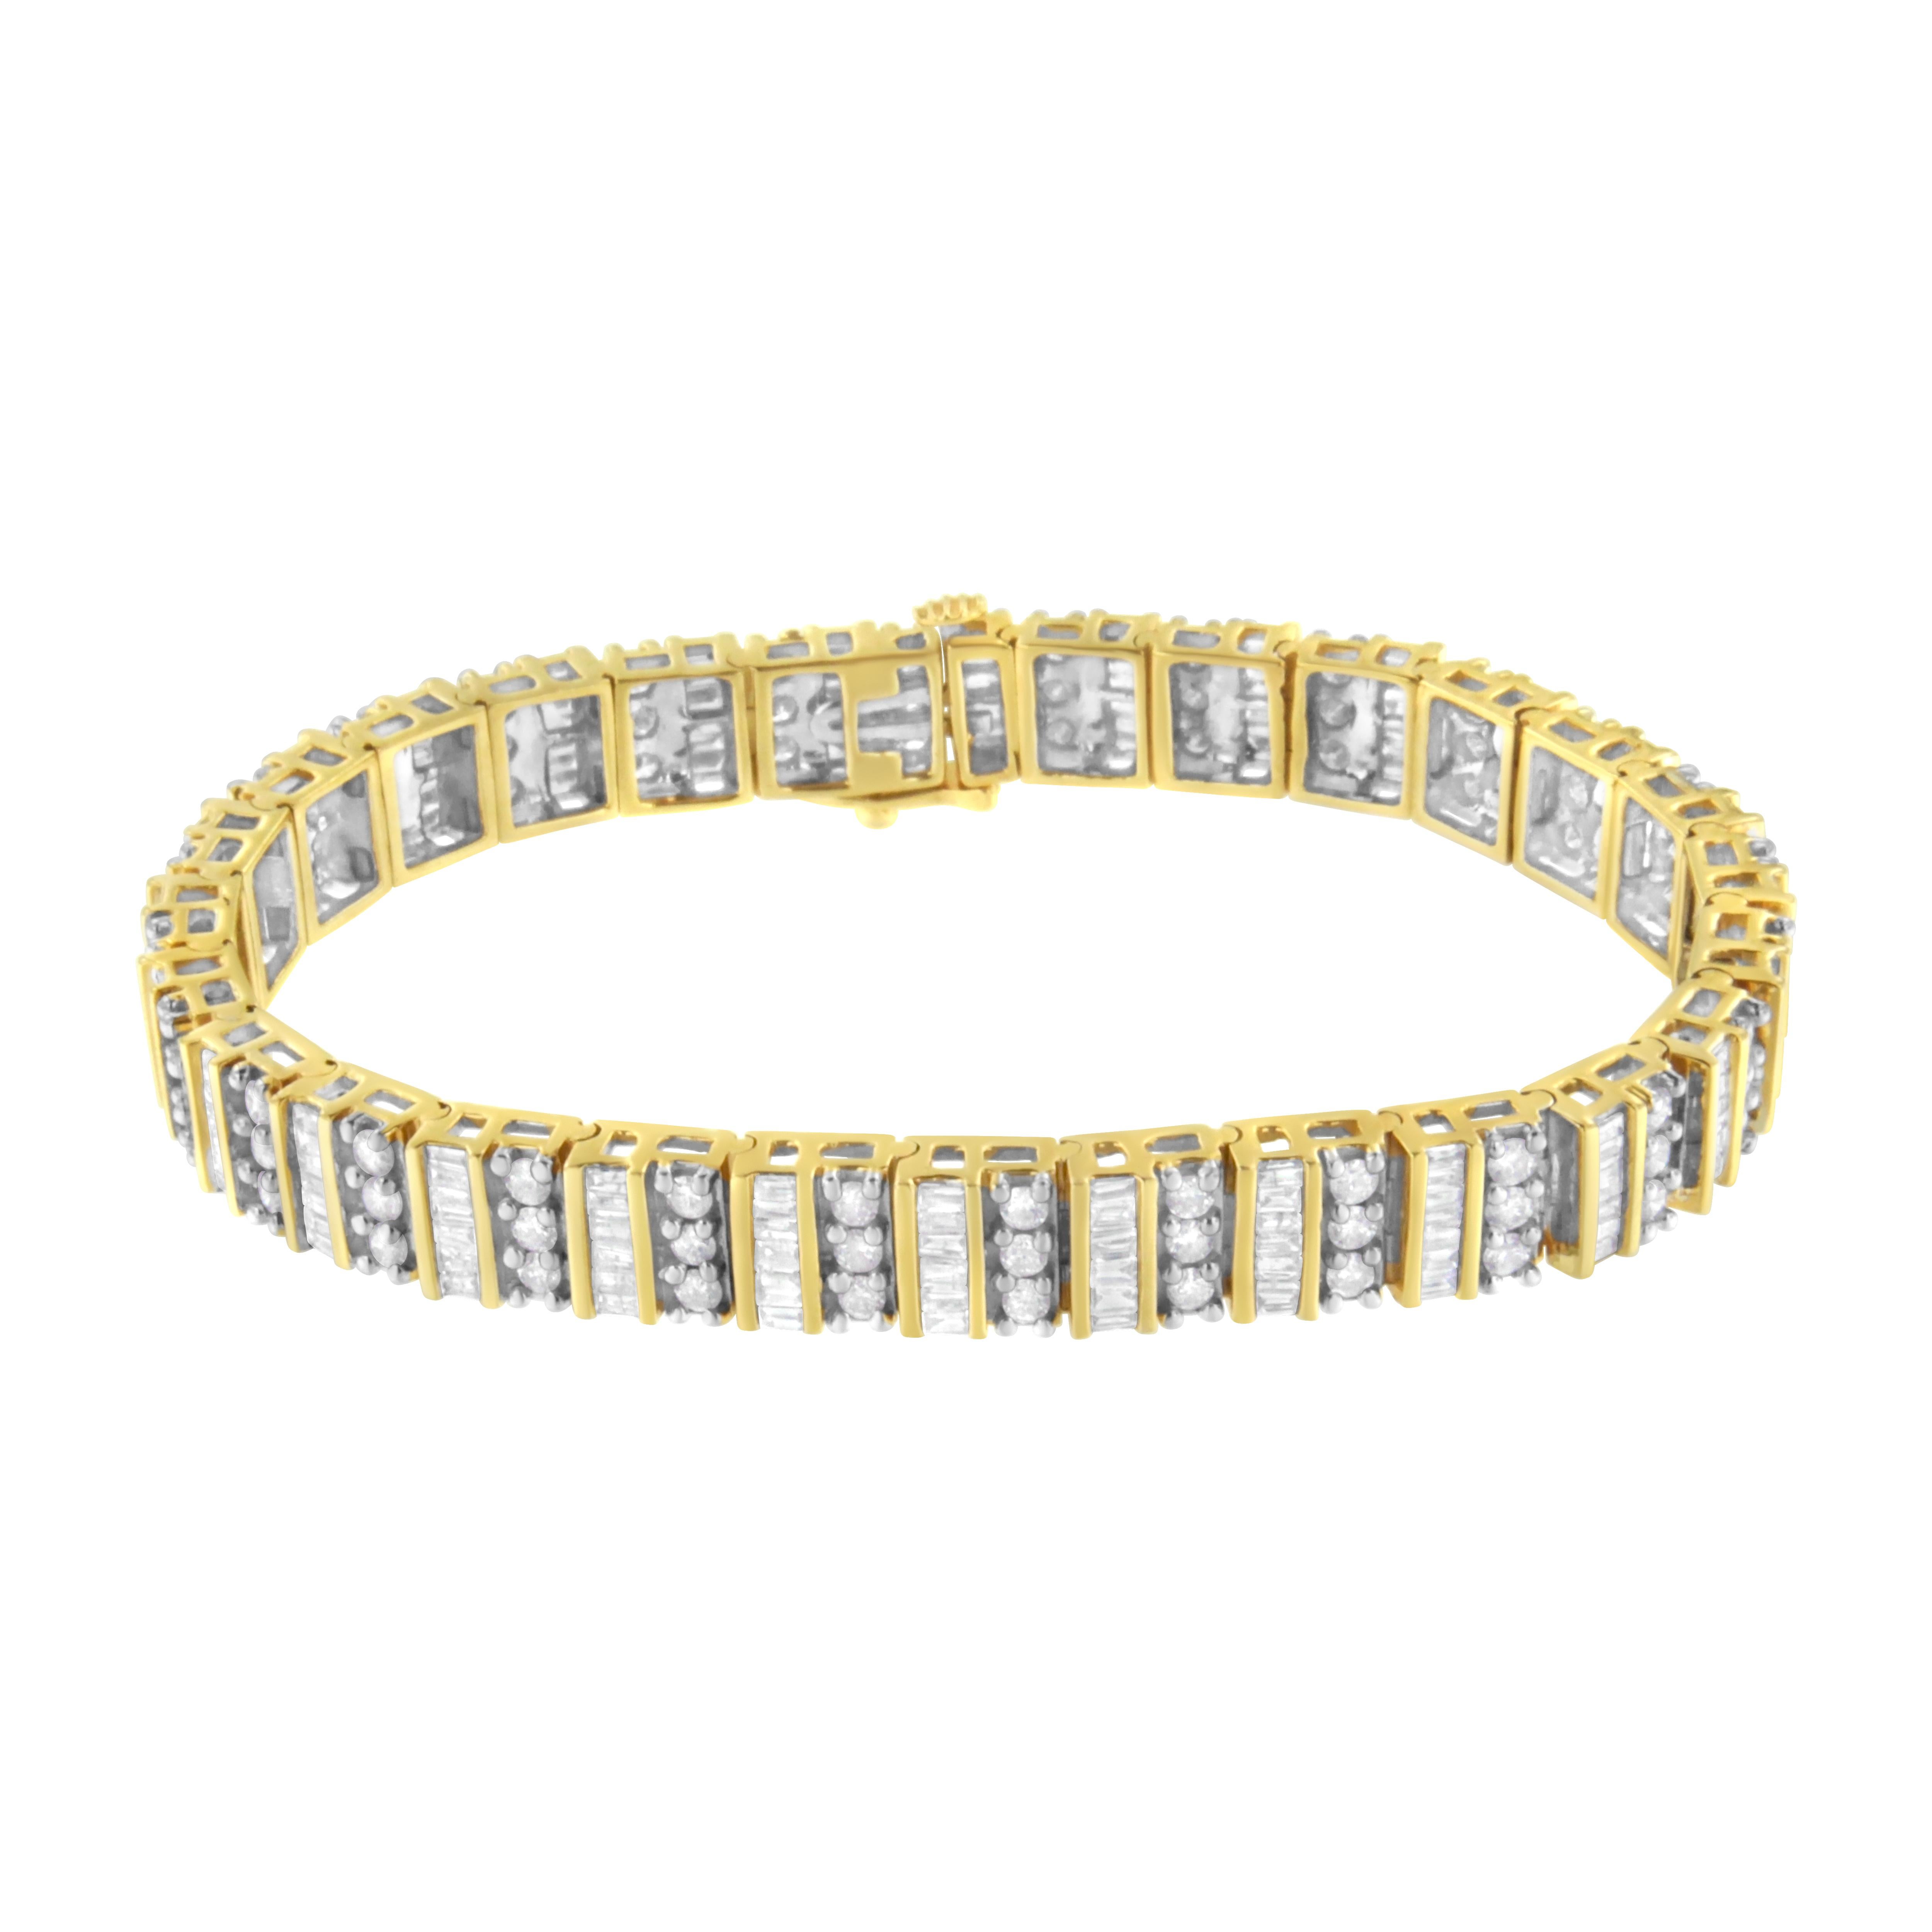 Soyez la star du spectacle en portant ce bracelet de diamants de style tennis. Créée en riche or jaune 14 carats, elle est sertie de duos chatoyants de diamants ronds et baguettes de 5 1/2ct. Polie jusqu'à être rayonnante, cette magnifique parure